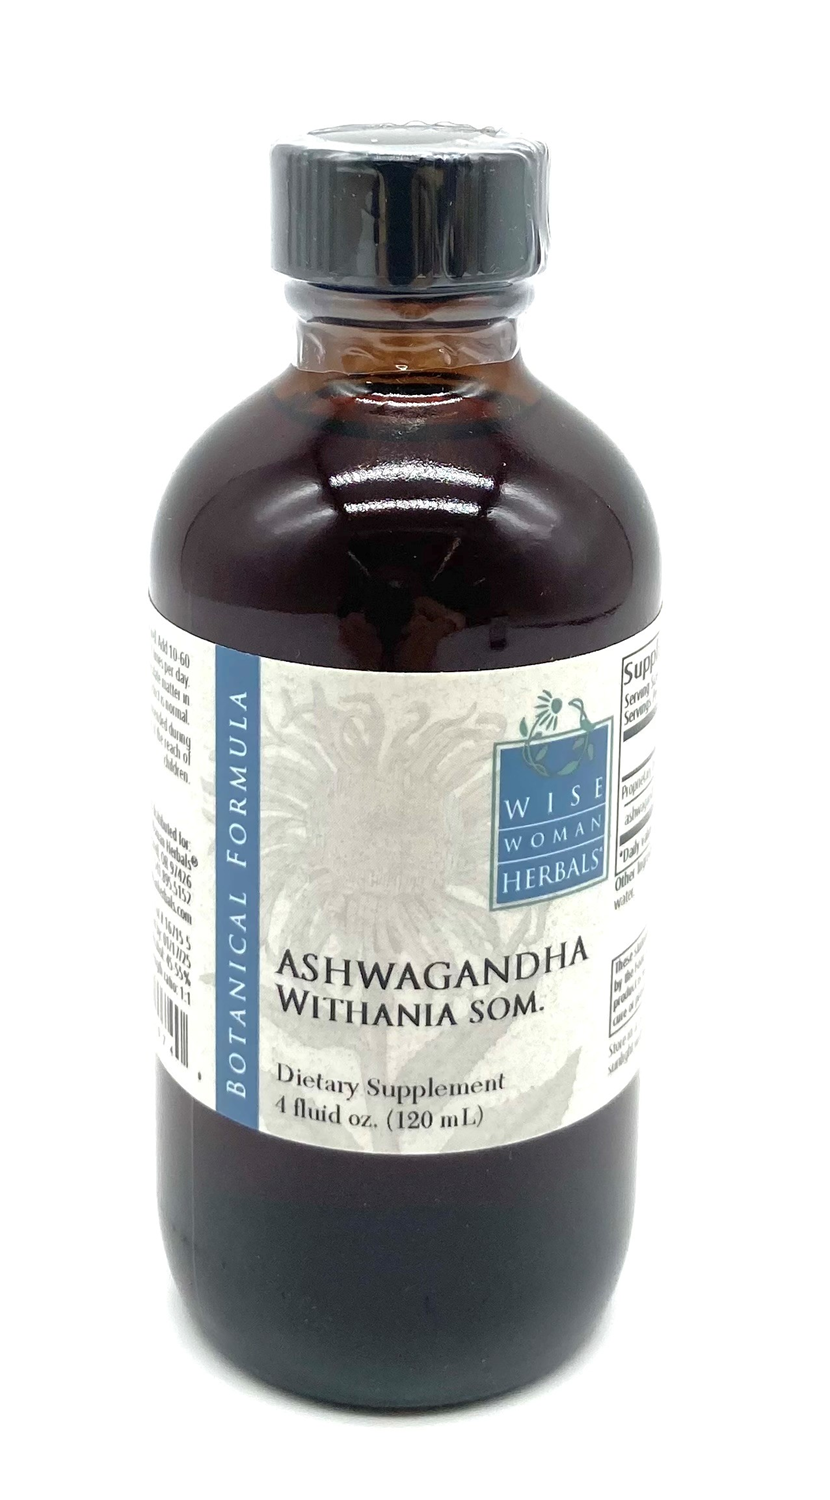 Ashwagandha Extract (Withania somnifera), 4 oz